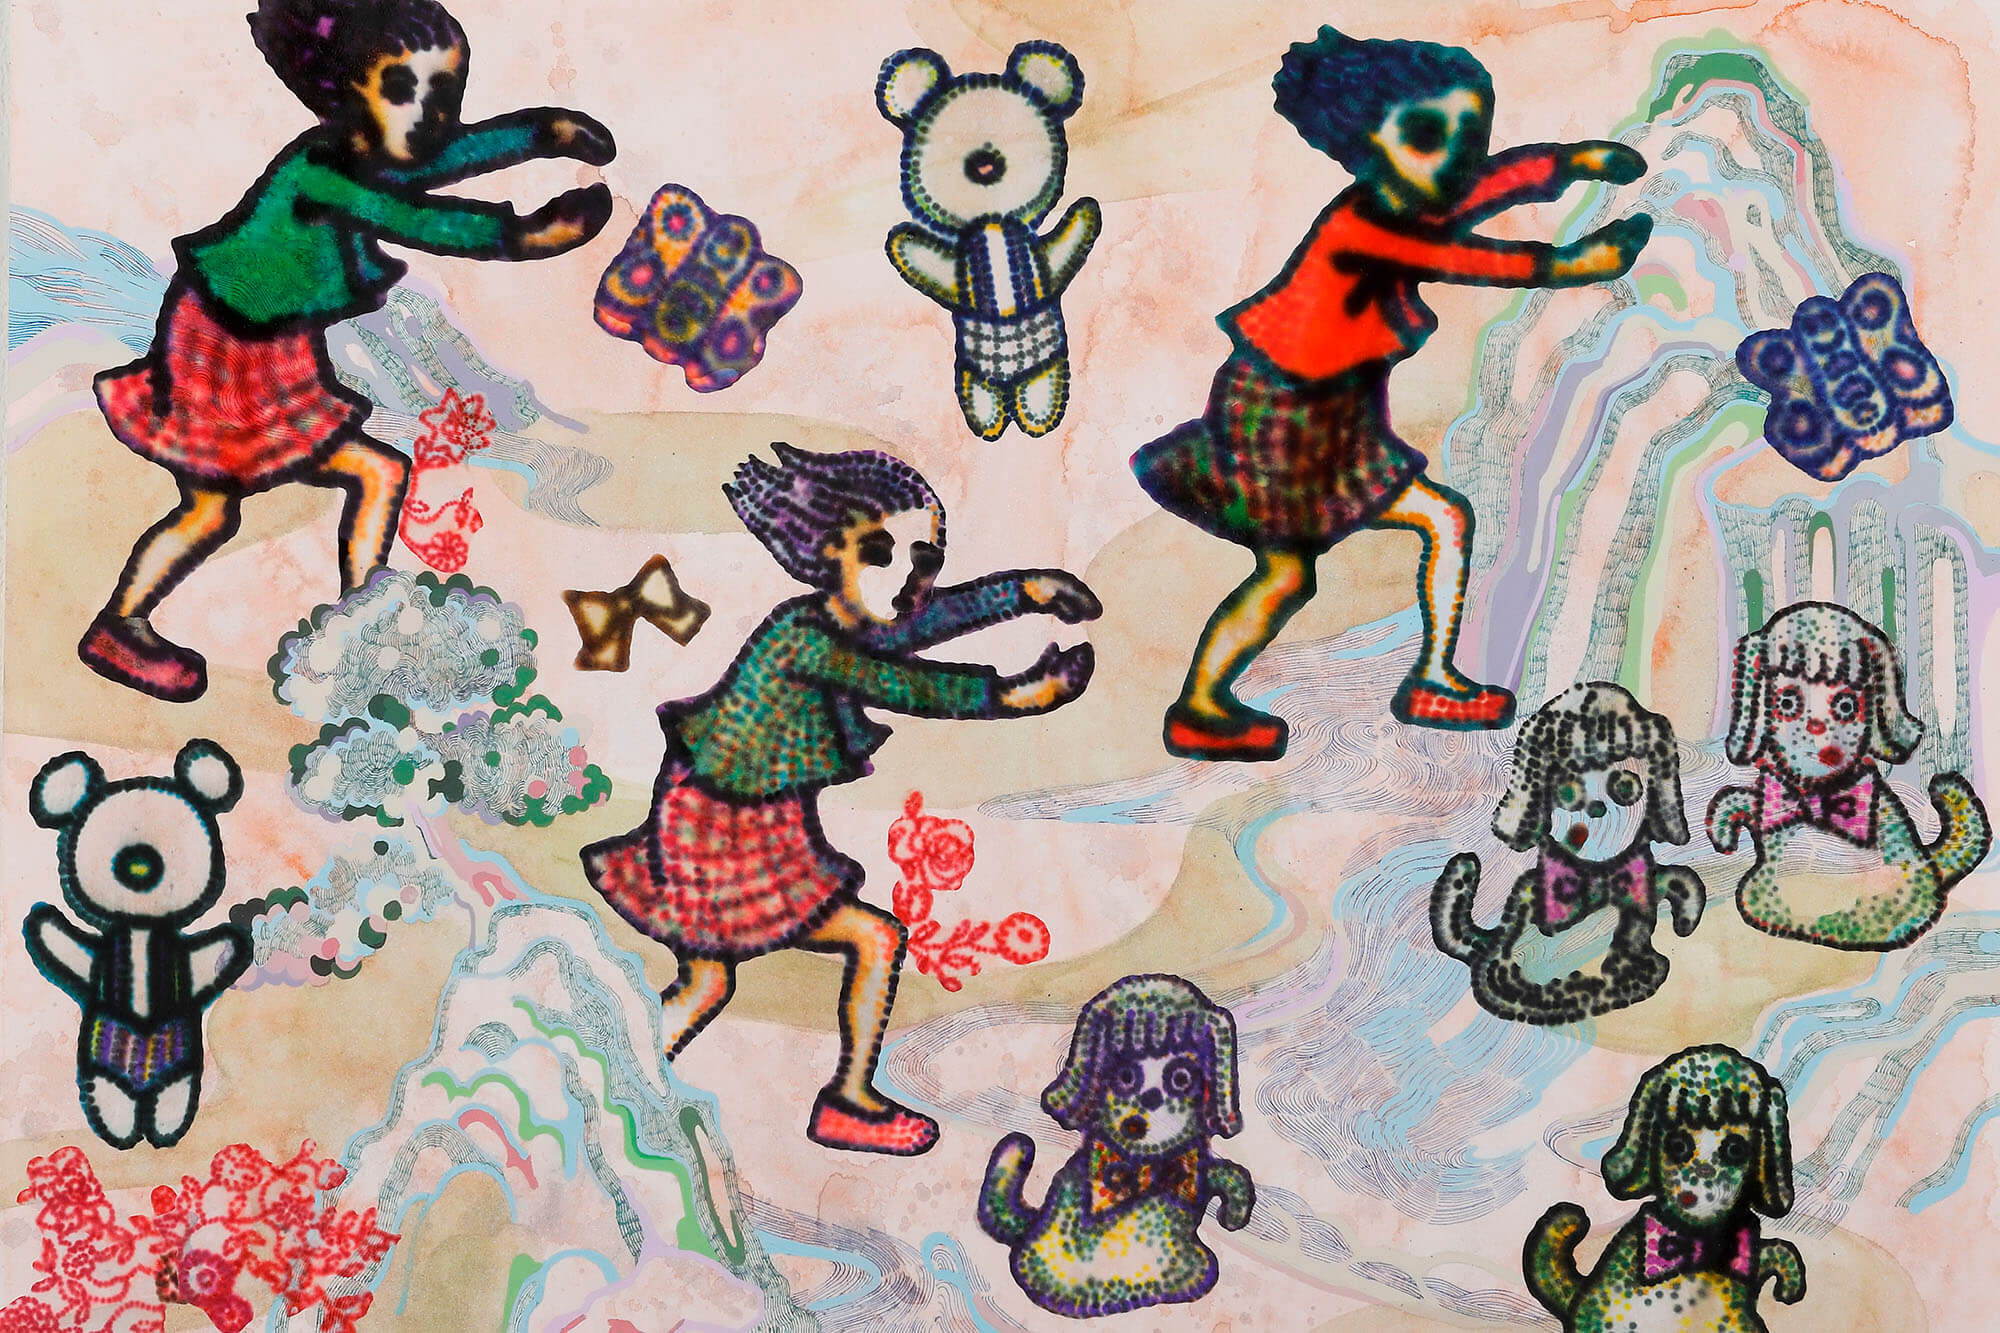 川口奈々子 | Nanako Kawaguchi | abstract balance 現代美術・現代アート 展覧会 キュレーション 美術・アート企画 オフソサエティ 長田哲征